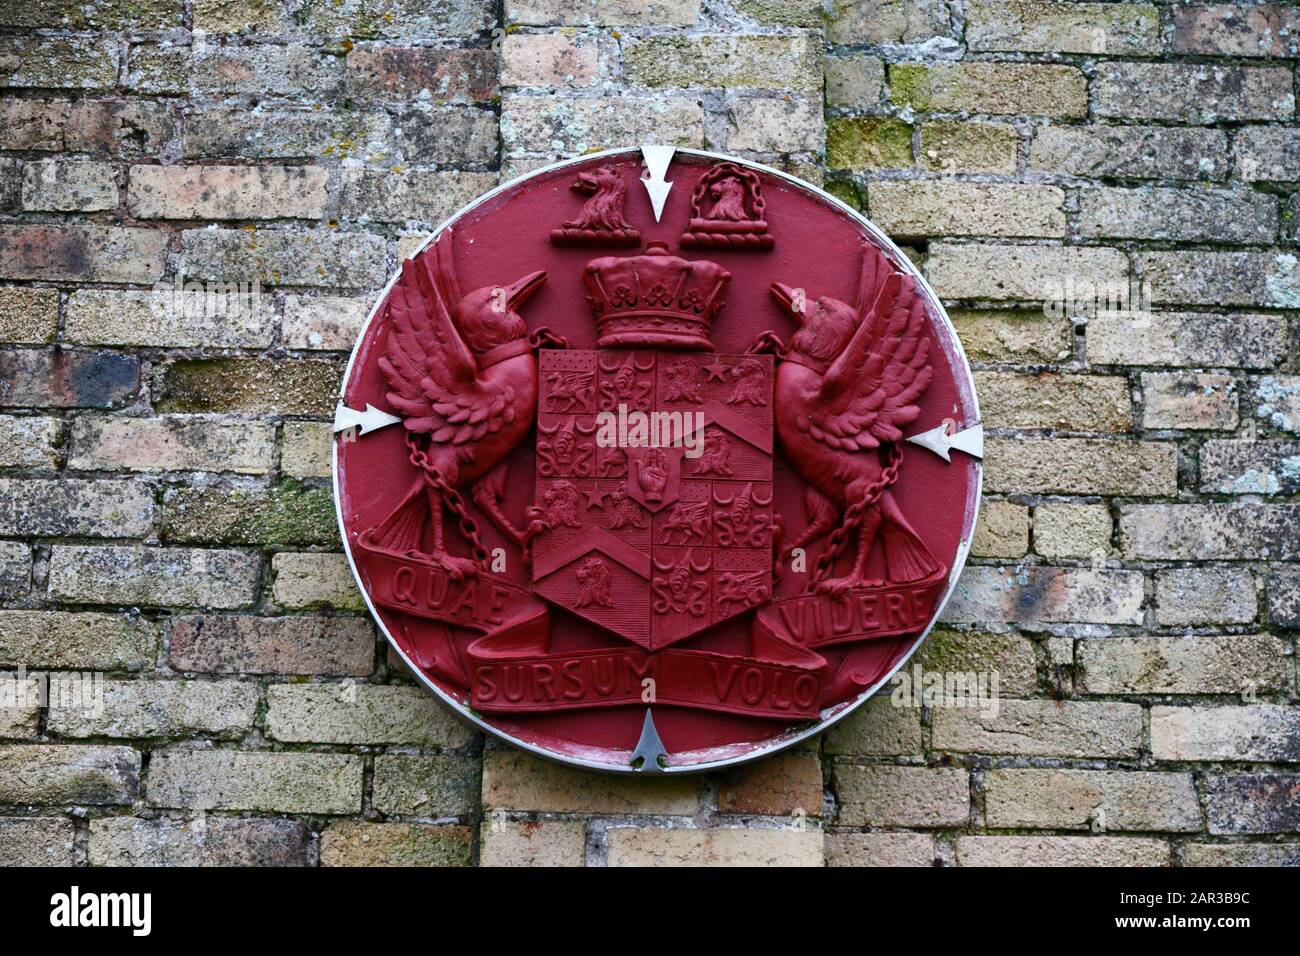 Armoiries du comte de Dunraven sur le mur dans des jardins fortifiés qui faisaient autrefois partie du domaine du château de Dunraven, South Glamourgan, Pays de Galles, Royaume-Uni Banque D'Images